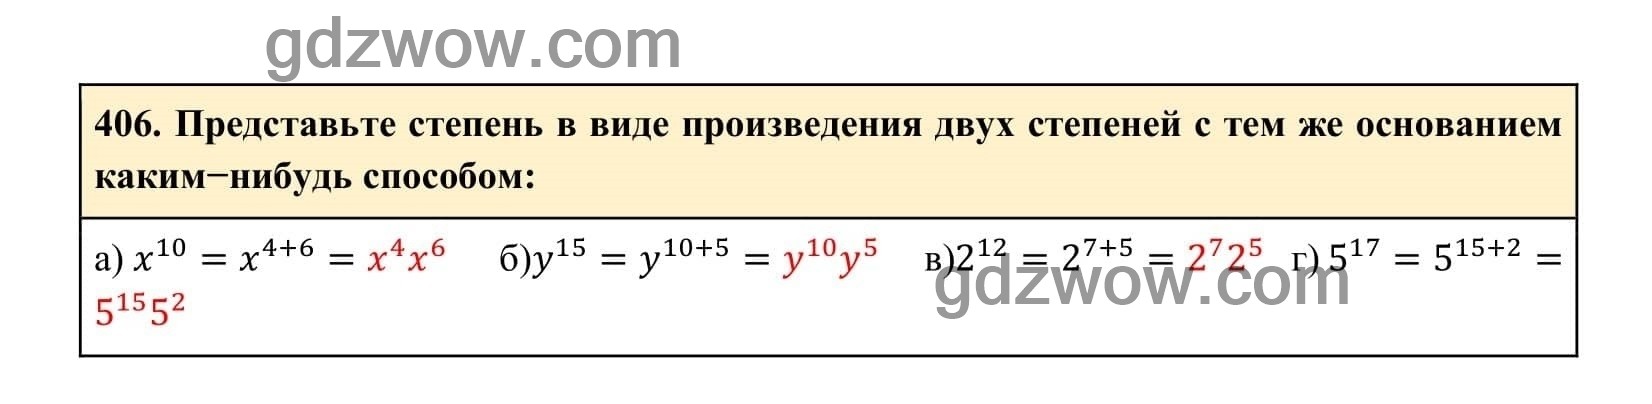 Упражнение 406 - ГДЗ по Алгебре 7 класс Учебник Макарычев (решебник) - GDZwow